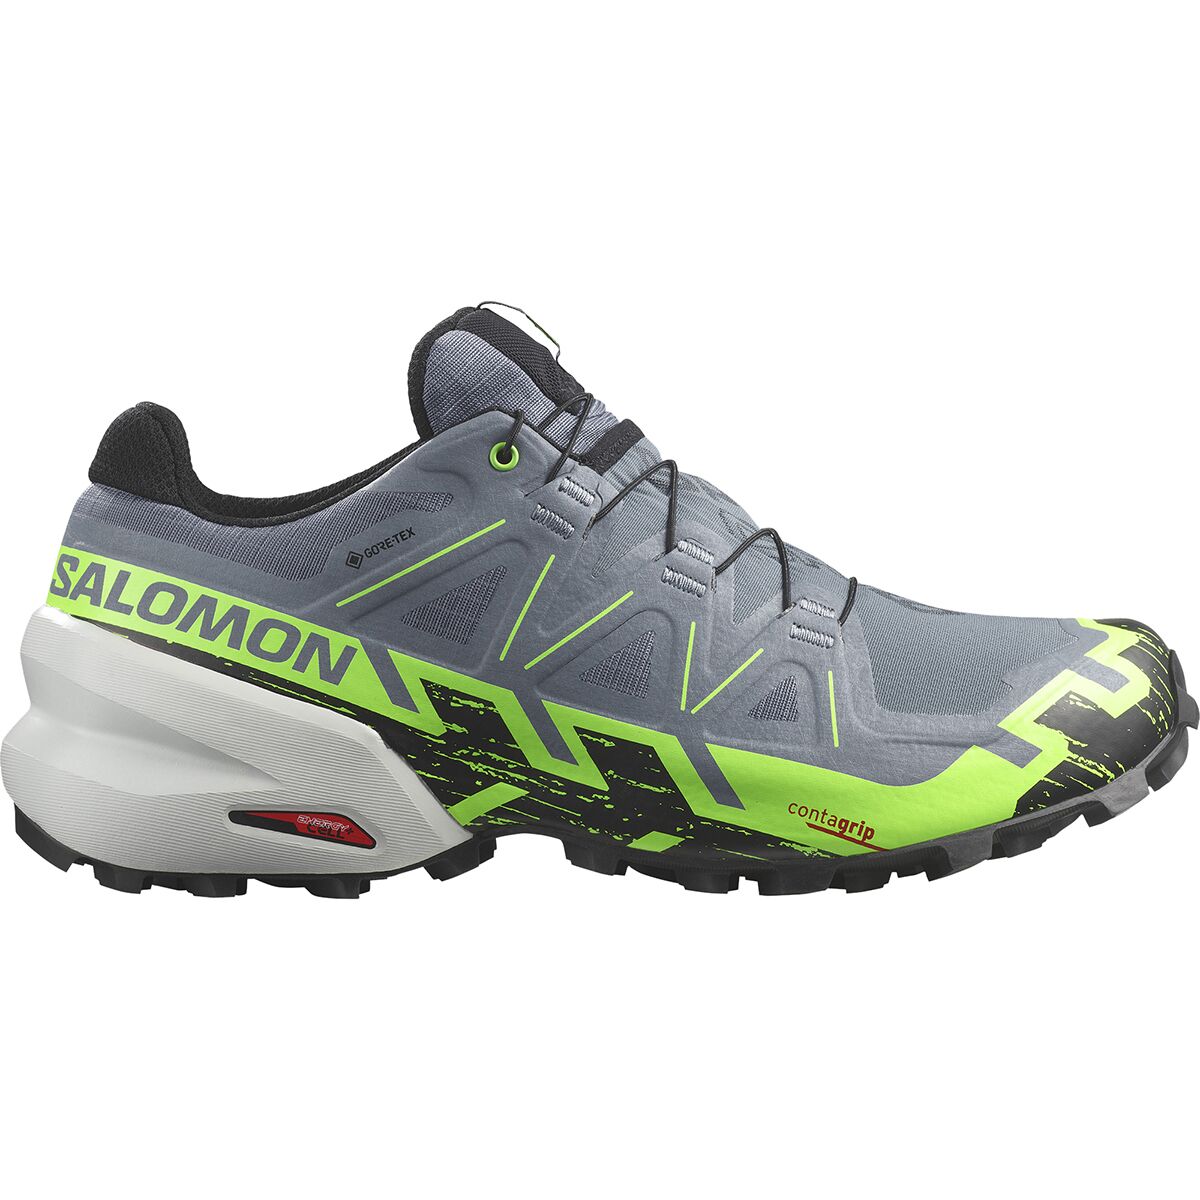 Speedcross 6 GTX Trail Running Shoe - Men